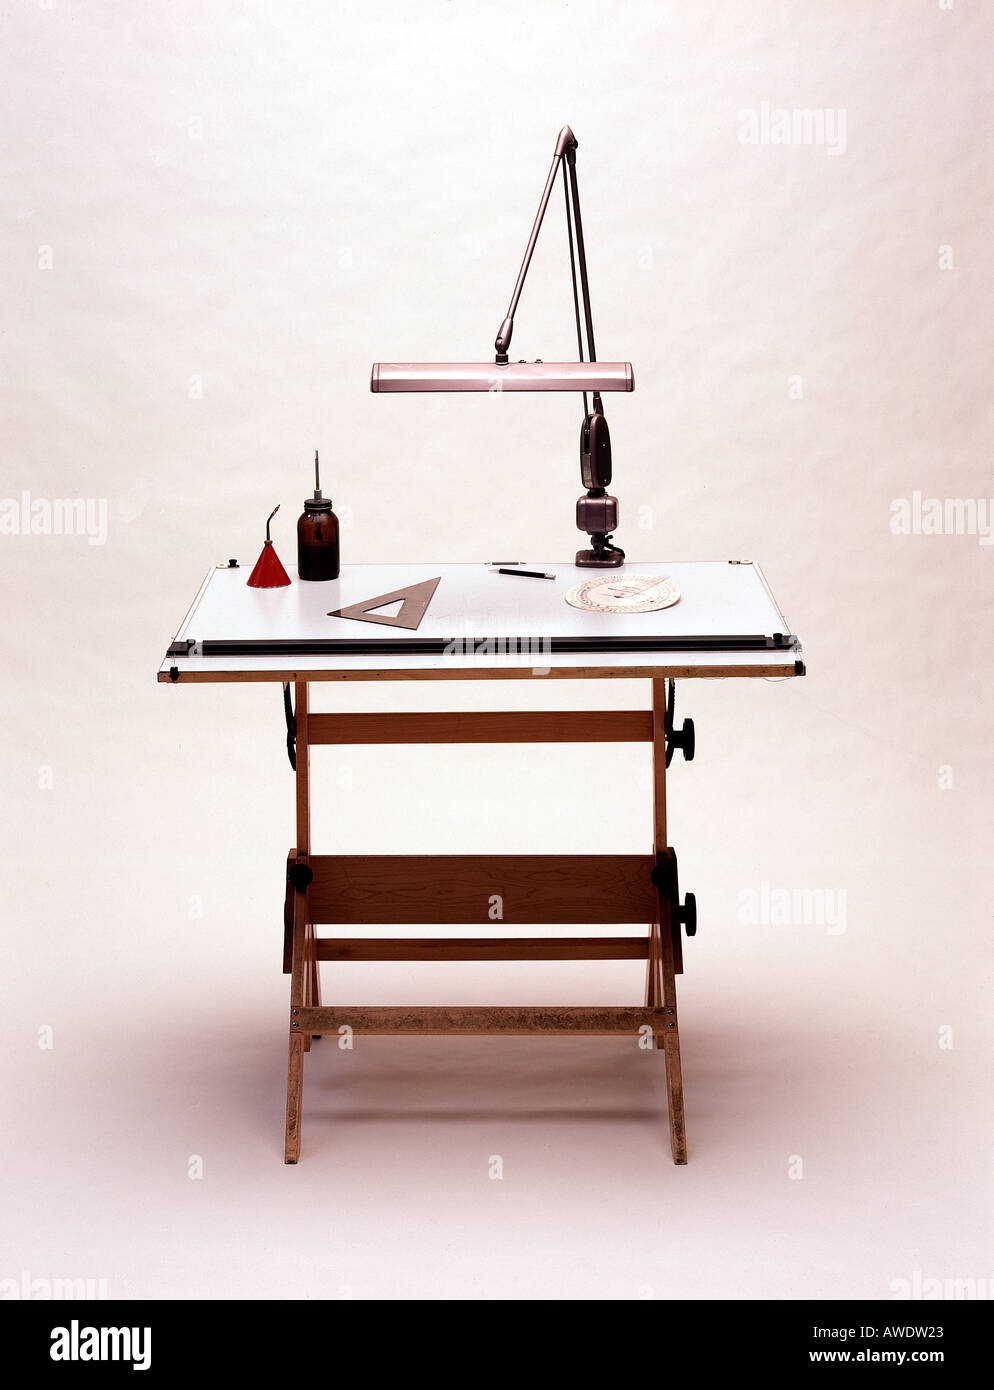 Ausarbeitung von Zeichner Architekt Designer Ingenieur Arbeit Tisch Lampe  Werkzeuge Dreieck grafischen Schreibtischlampe Stockfotografie - Alamy